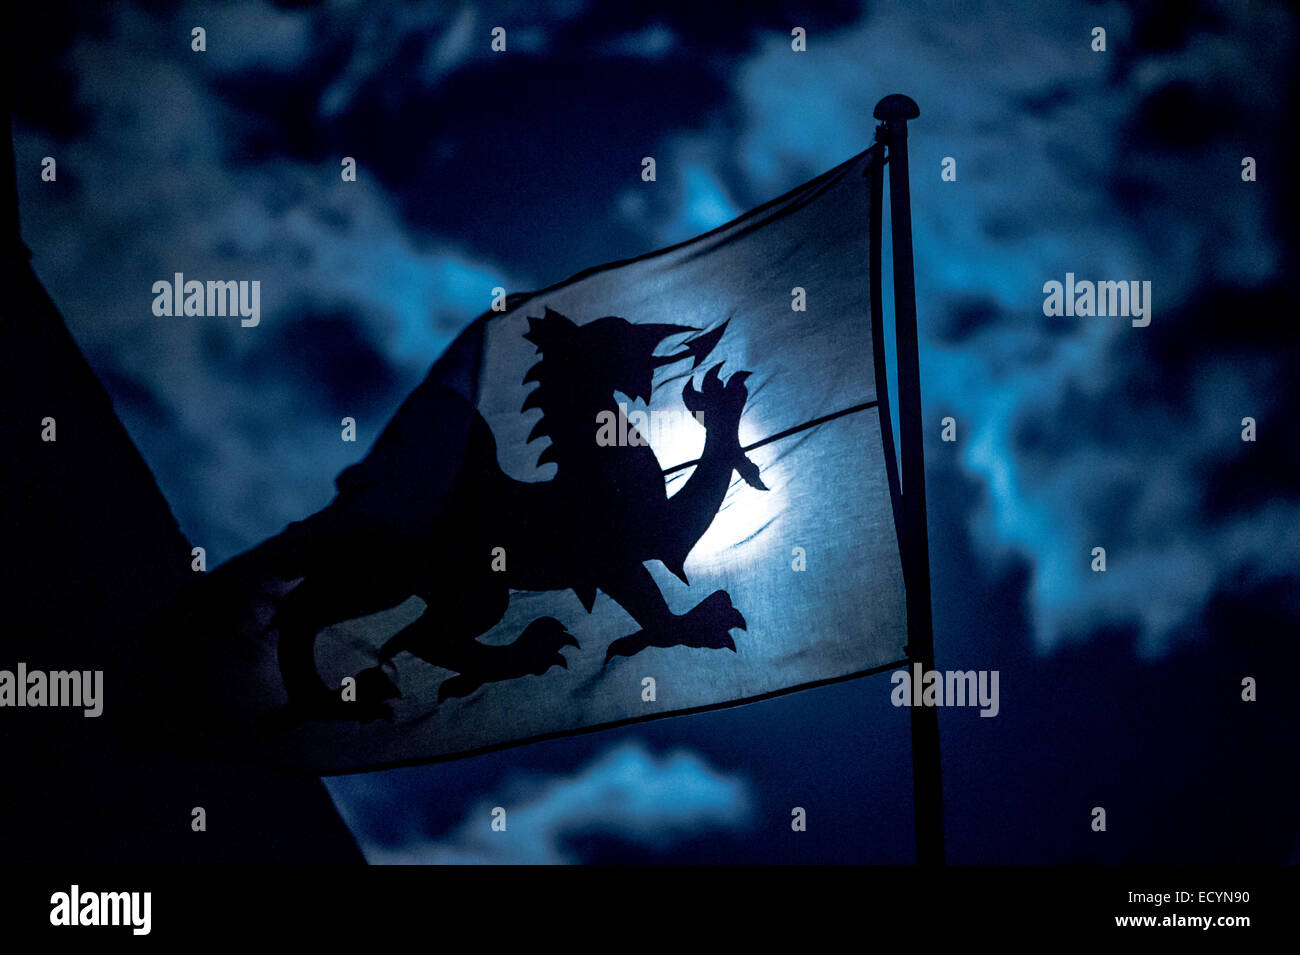 La pleine lune qui brillait à travers un drapeau national gallois, bannière montrant le dragon rouge Lune emblème du pays de Galles en silhouette, le Pays de Galles UK Banque D'Images